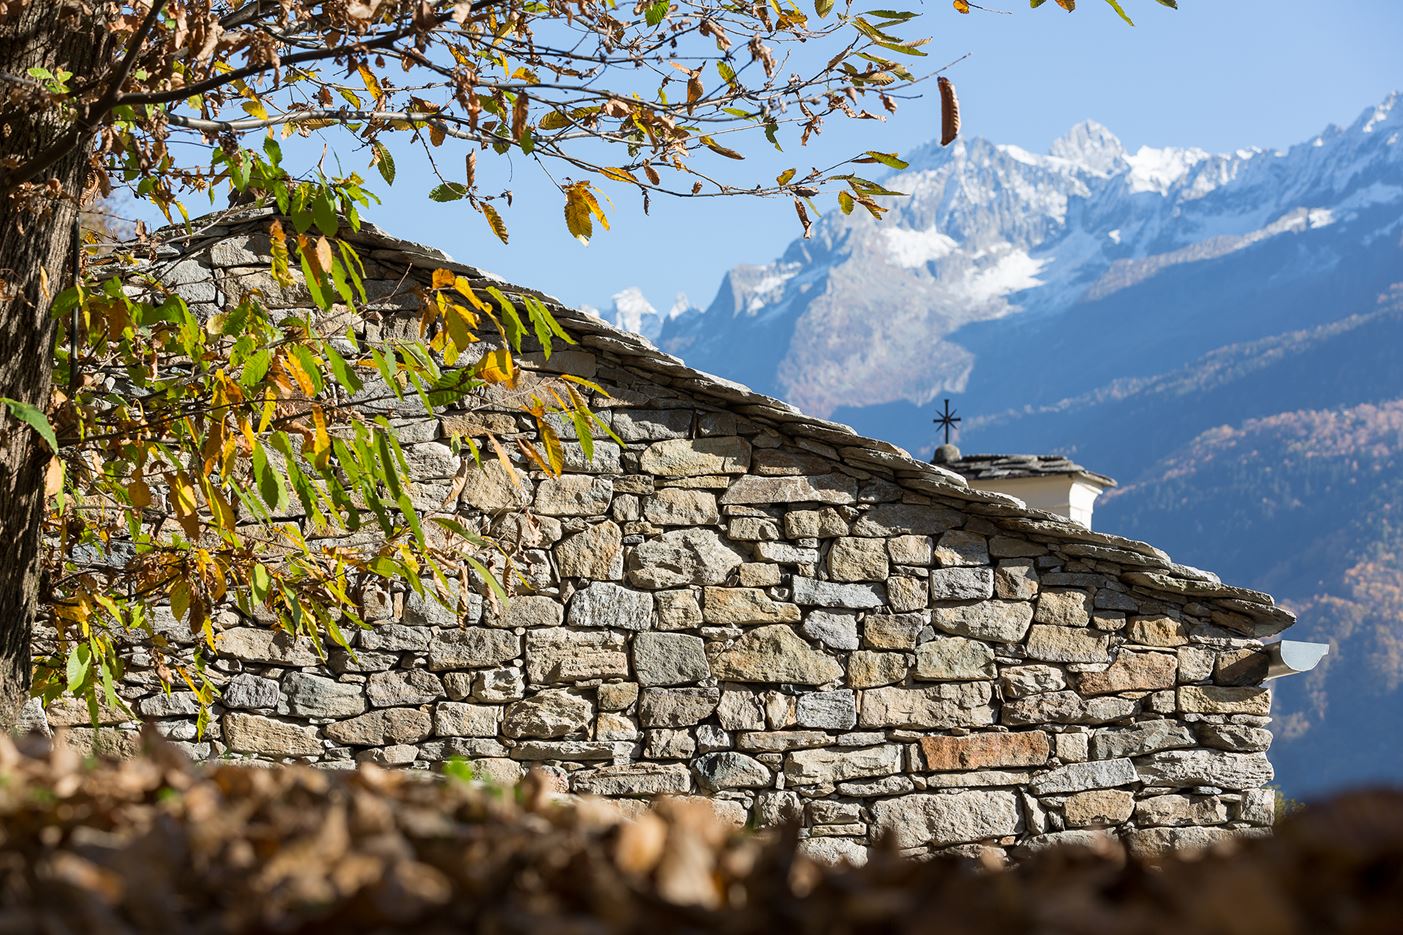 Mountain Stone House in Crana, Italy by Vudafieri Saverino Partners